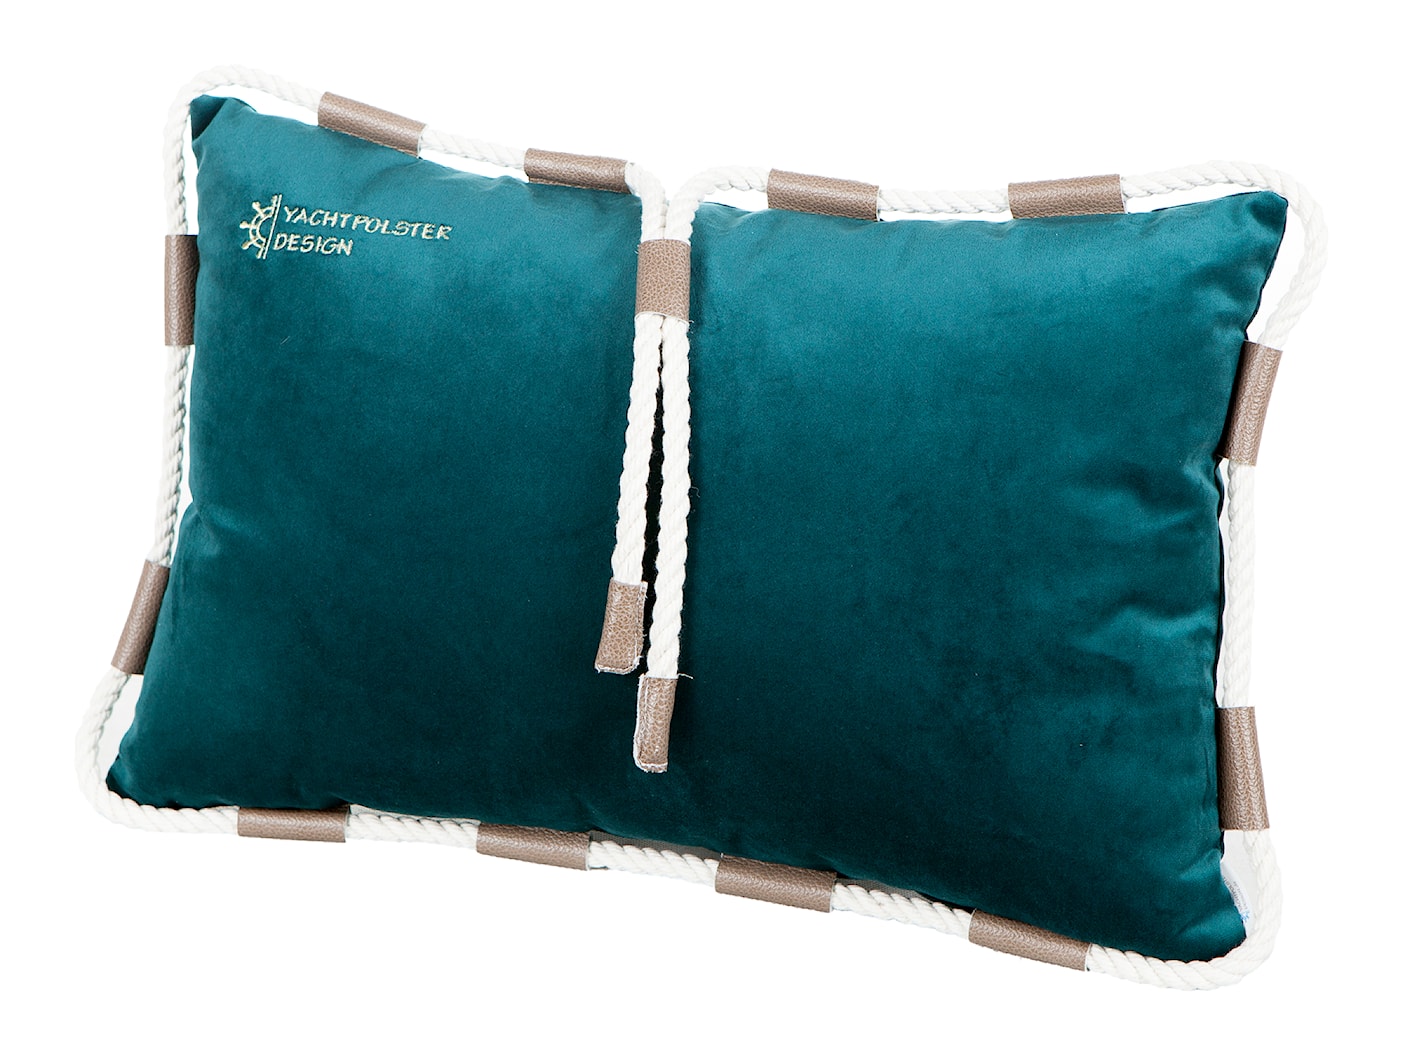 Poduszka ozdobna ze sznurkiem bawełniamym - zdjęcie od yachtpolster-design.de - Homebook